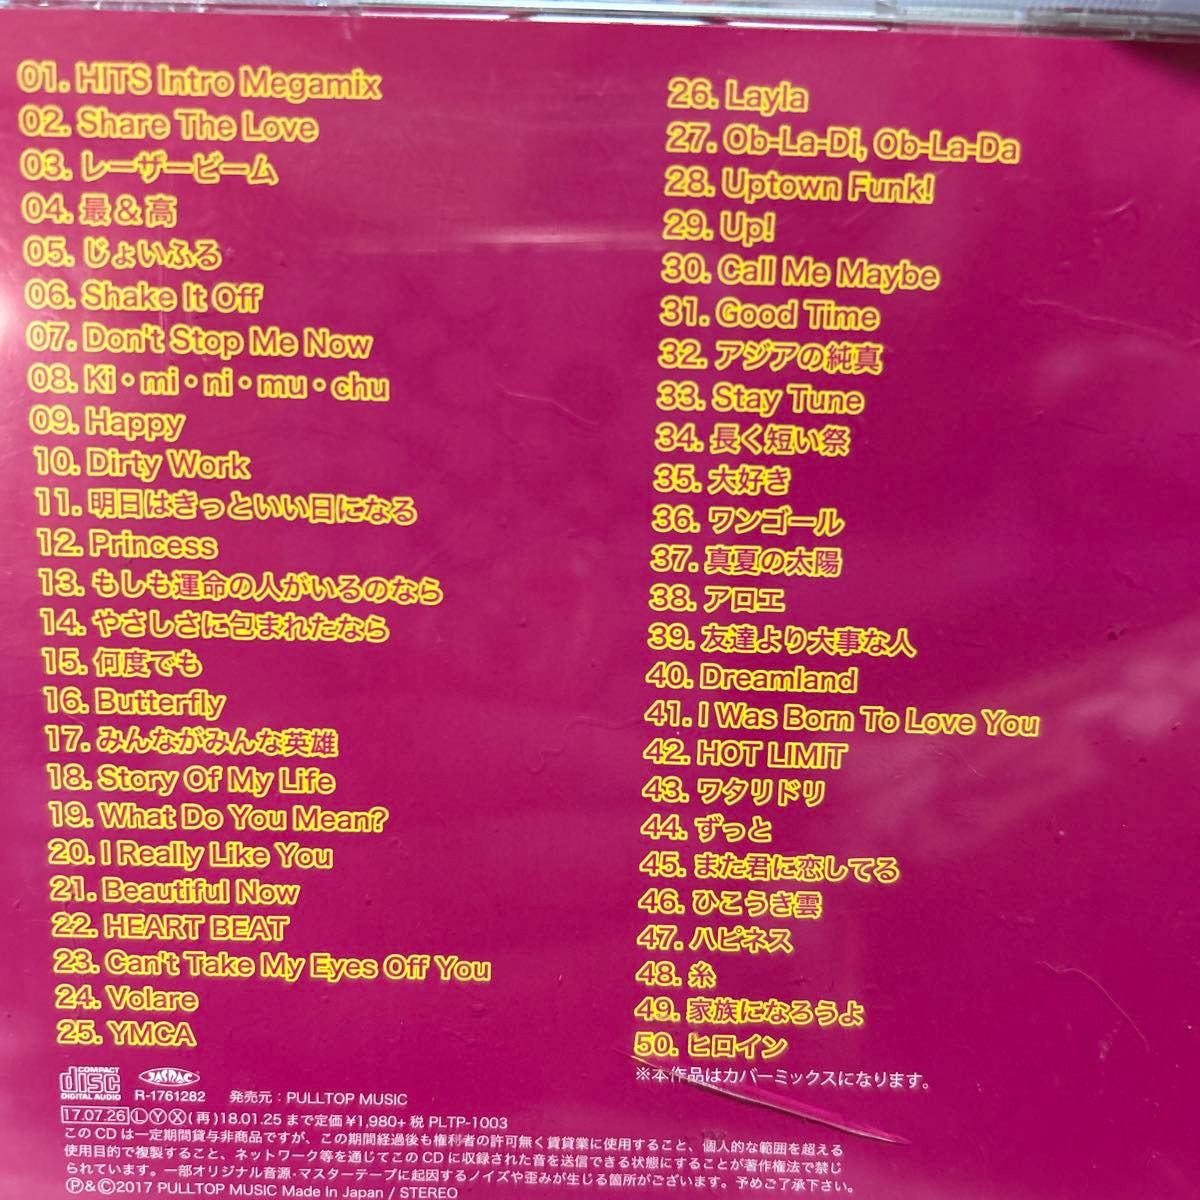 【CDまとめ売り】J-POP オムニバス カバーMIX /15年150曲 J-POP 50Hit など4枚set 中古CD まとめ